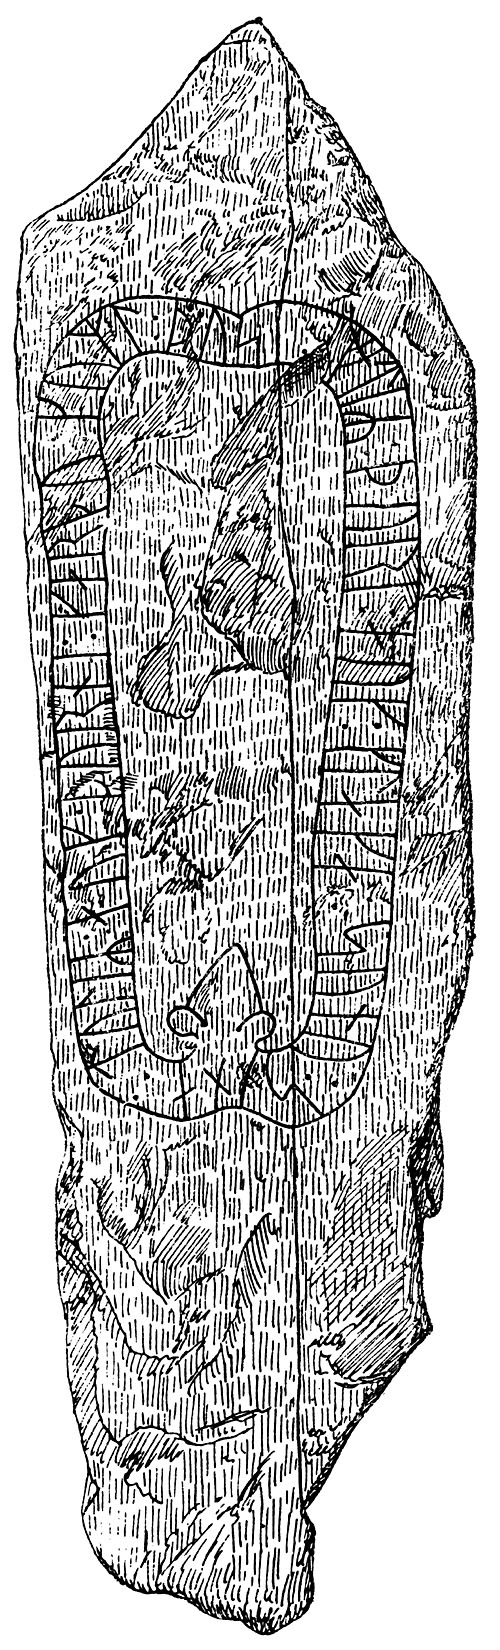 Rune Stone at Hkerum, Municipality of Ulricehamn, Sweden Rune Stone at Hkerum, Municipality of Ulricehamn, Sweden . Runsten vid Svedjorna i Hkerum, Vstergtland.